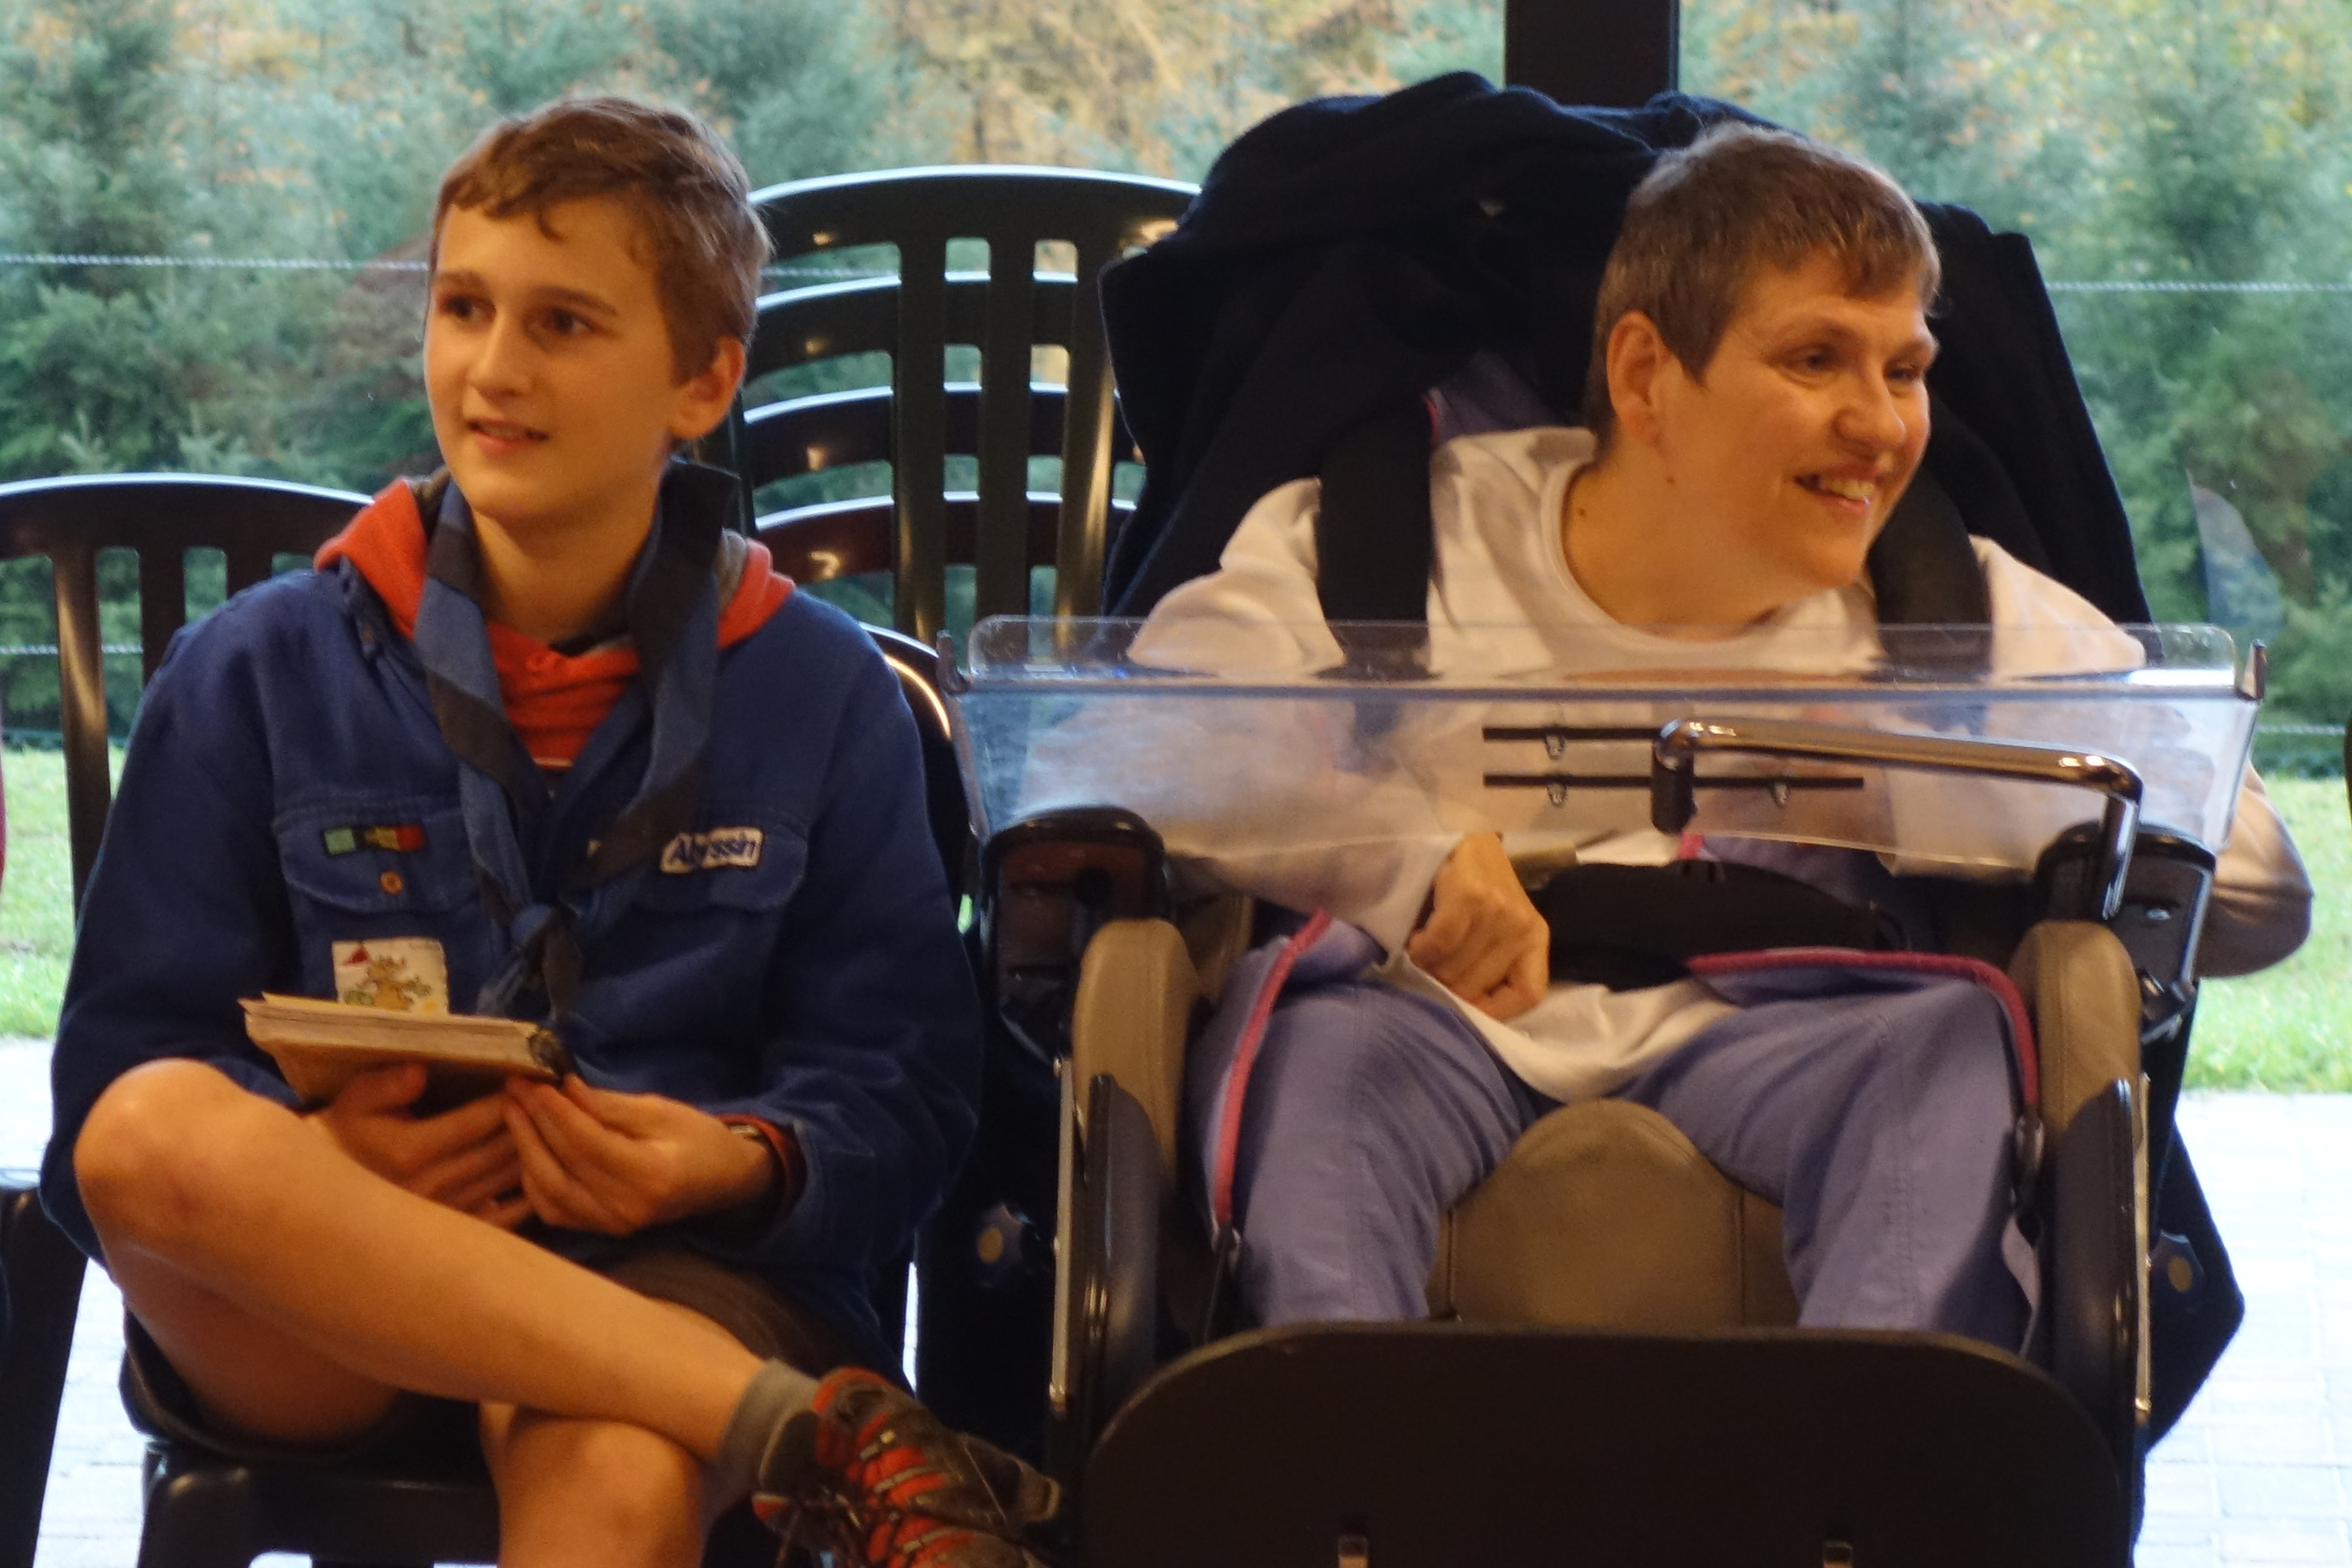 Scout assis à côté d'une personne en situation de handicap